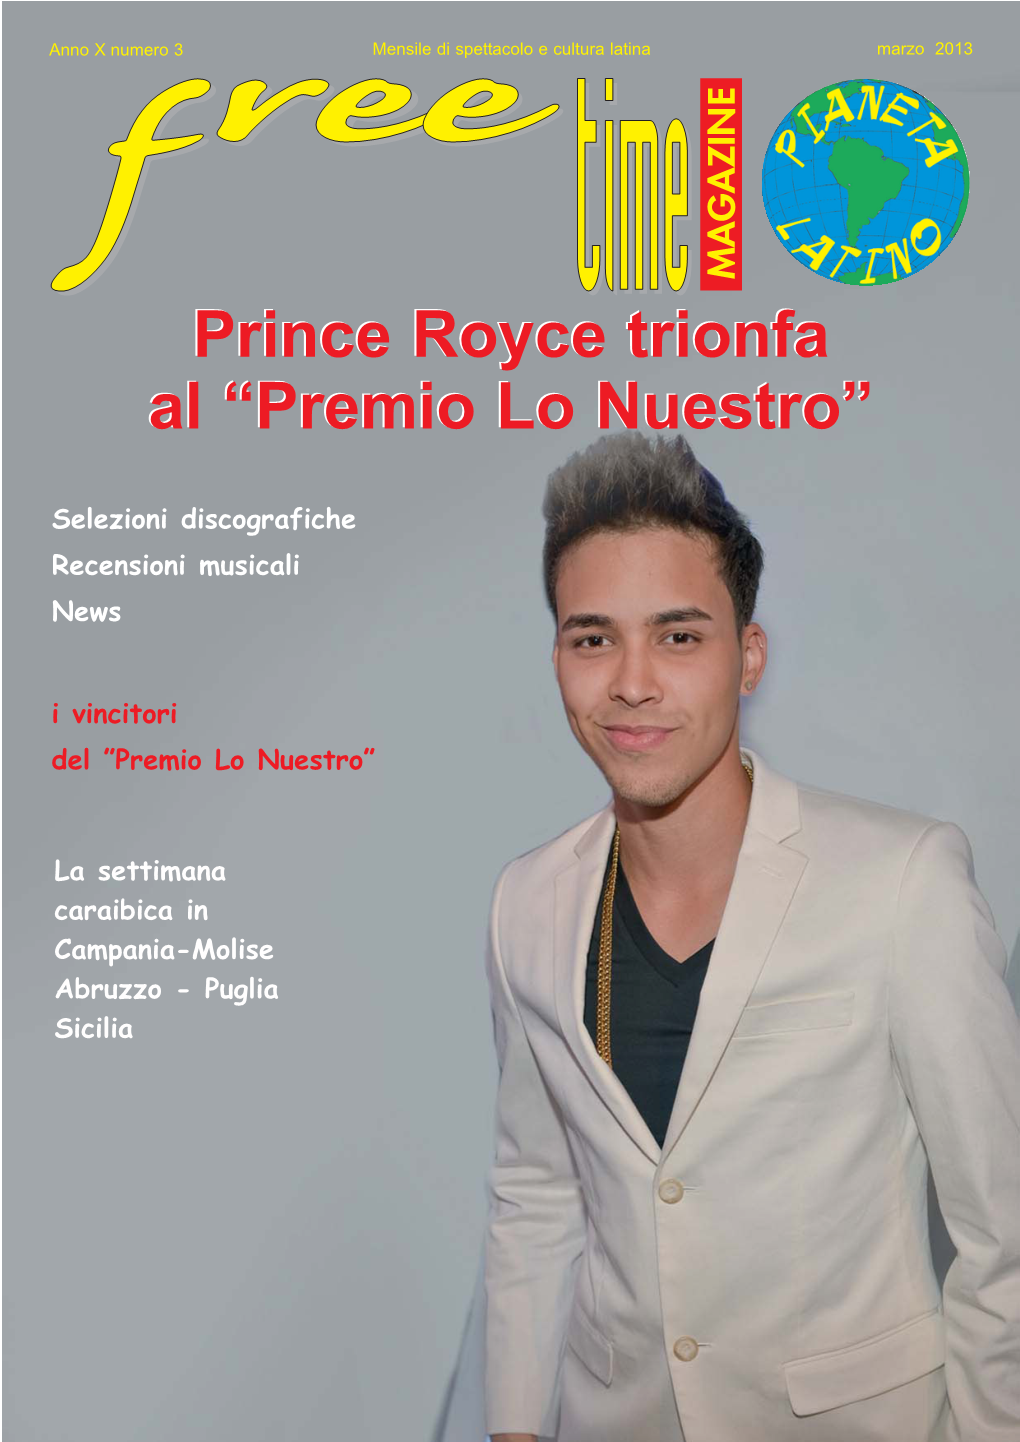 Prince Royce Trionfa Al “Premio Lo Nuestro”